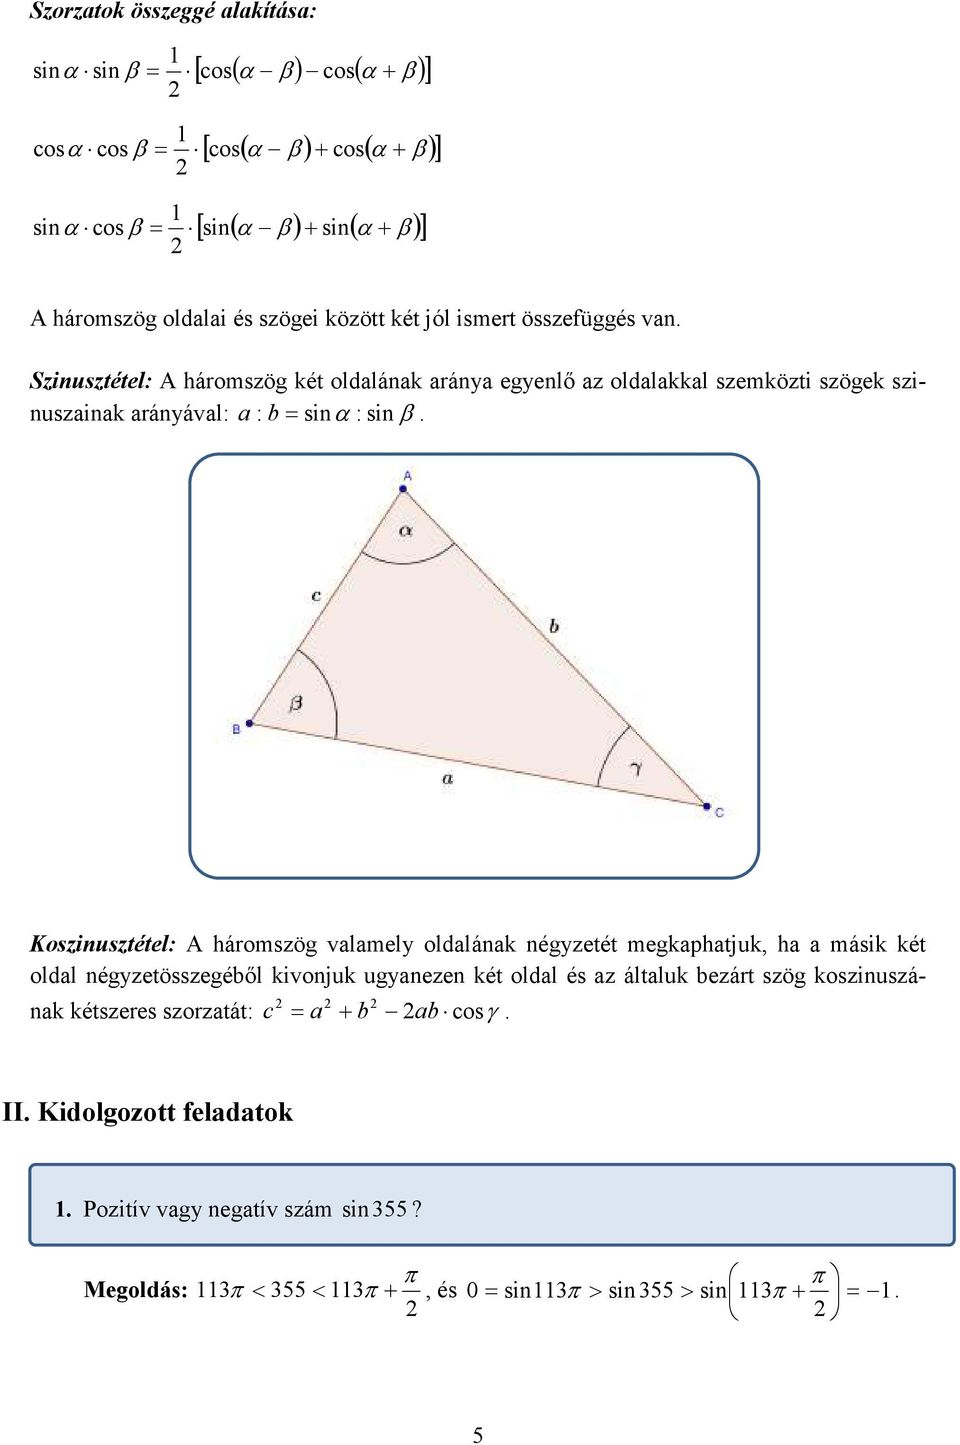 sinα : sinβ Koszinusztétel: A háromszög valamely oldalának négyzetét megkaphatjuk ha a másik két oldal négyzetösszegéből kivonjuk ugyanezen két oldal és az általuk